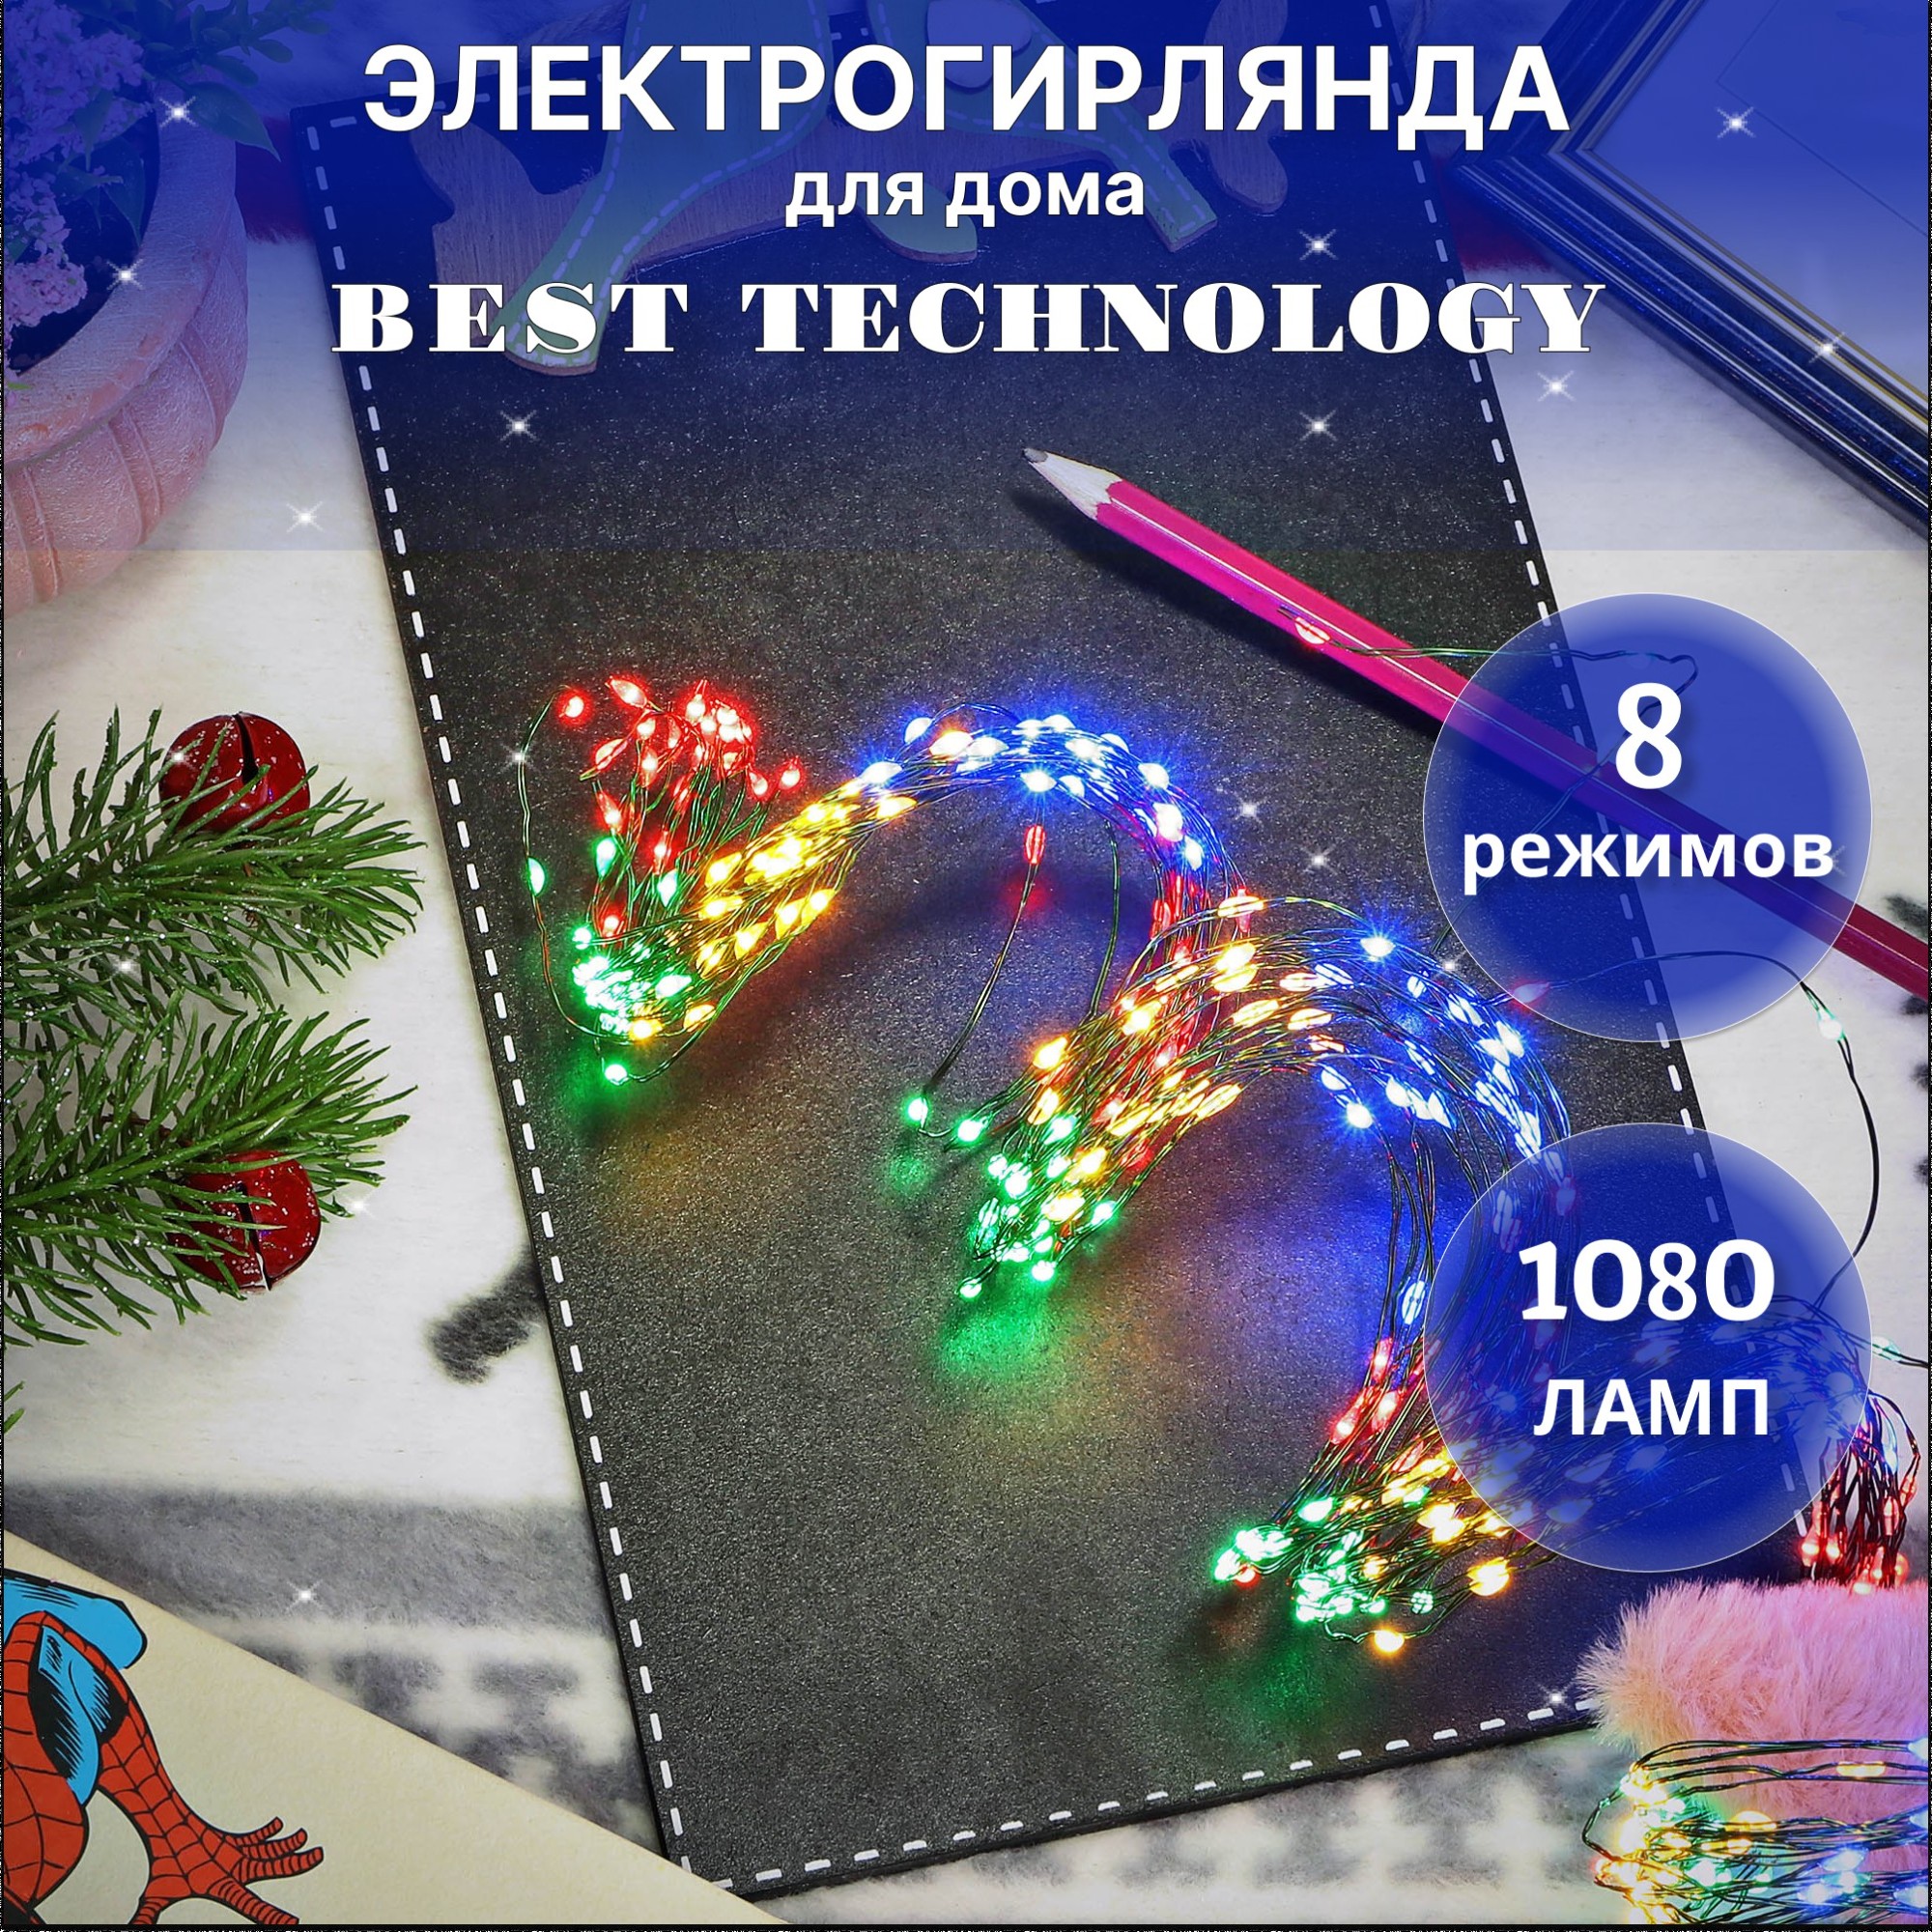 Электрогирлянда Best Technology 1080 LED 7,15 м со стартовым шнуром, цвет зеленый - фото 2